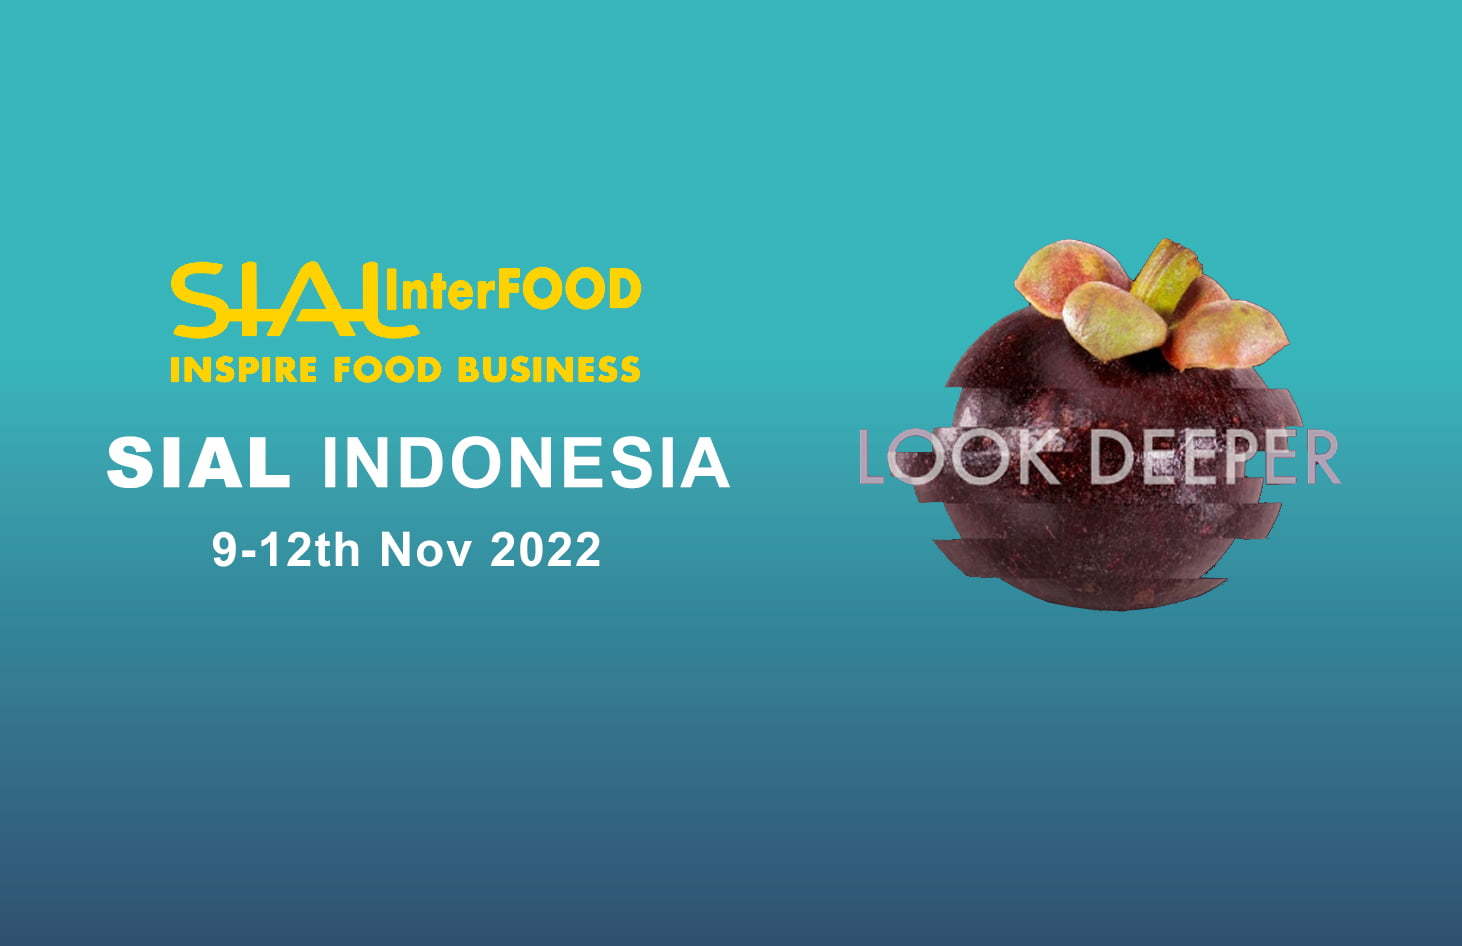 Invitación a la exposición - SIAL InterFood 2022 Indonesia